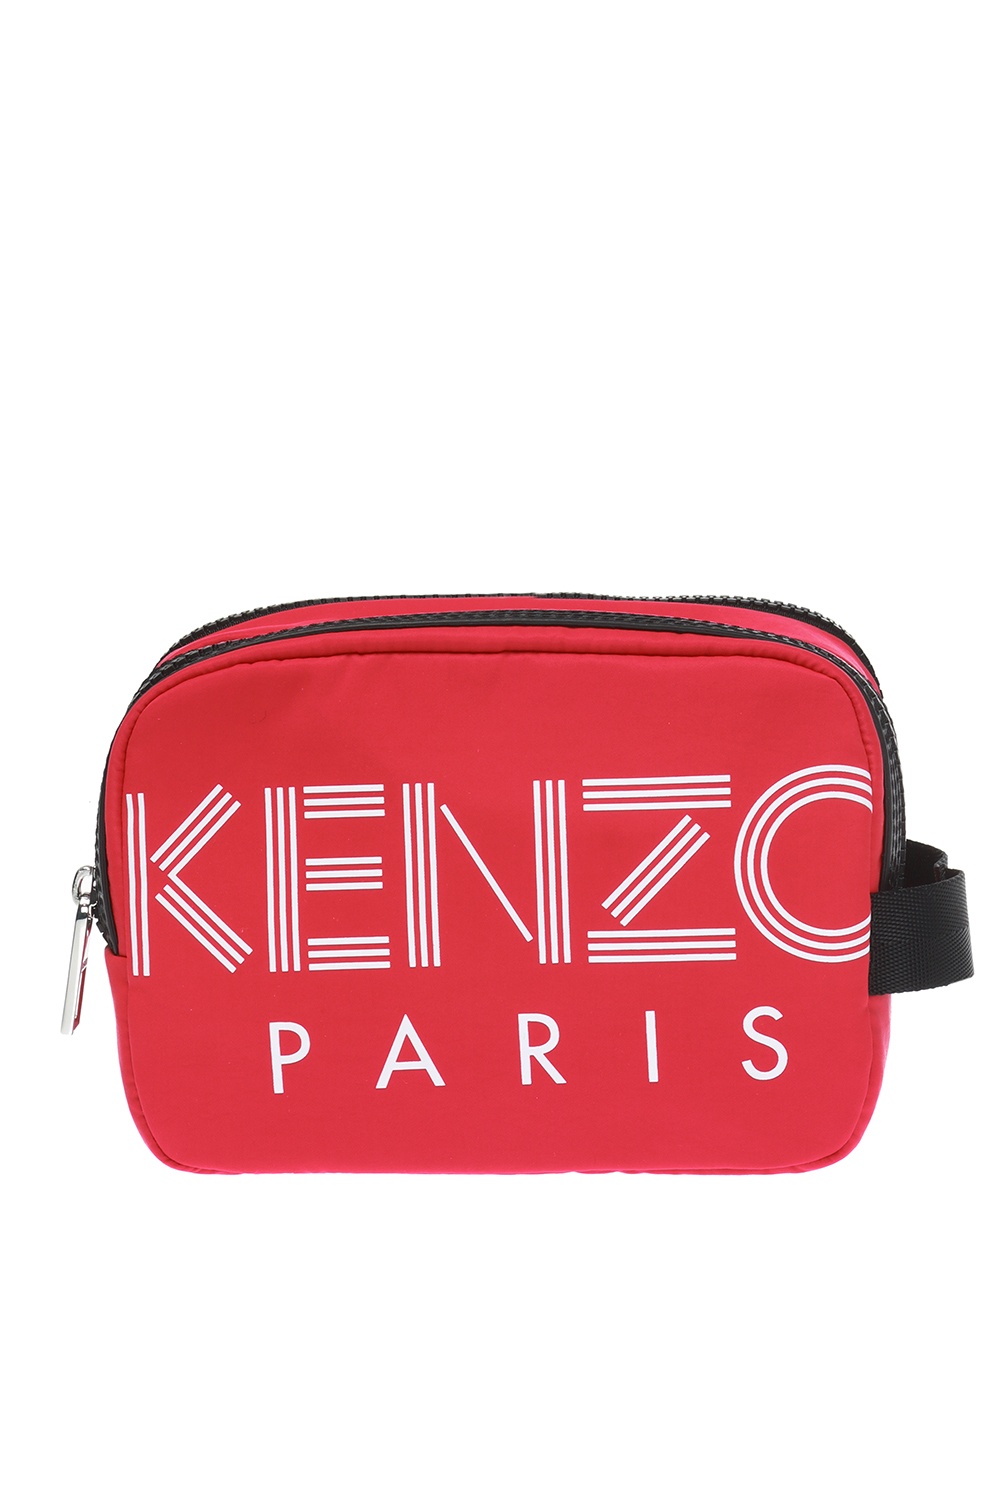 Branded wash bag Kenzo - Vitkac Australia